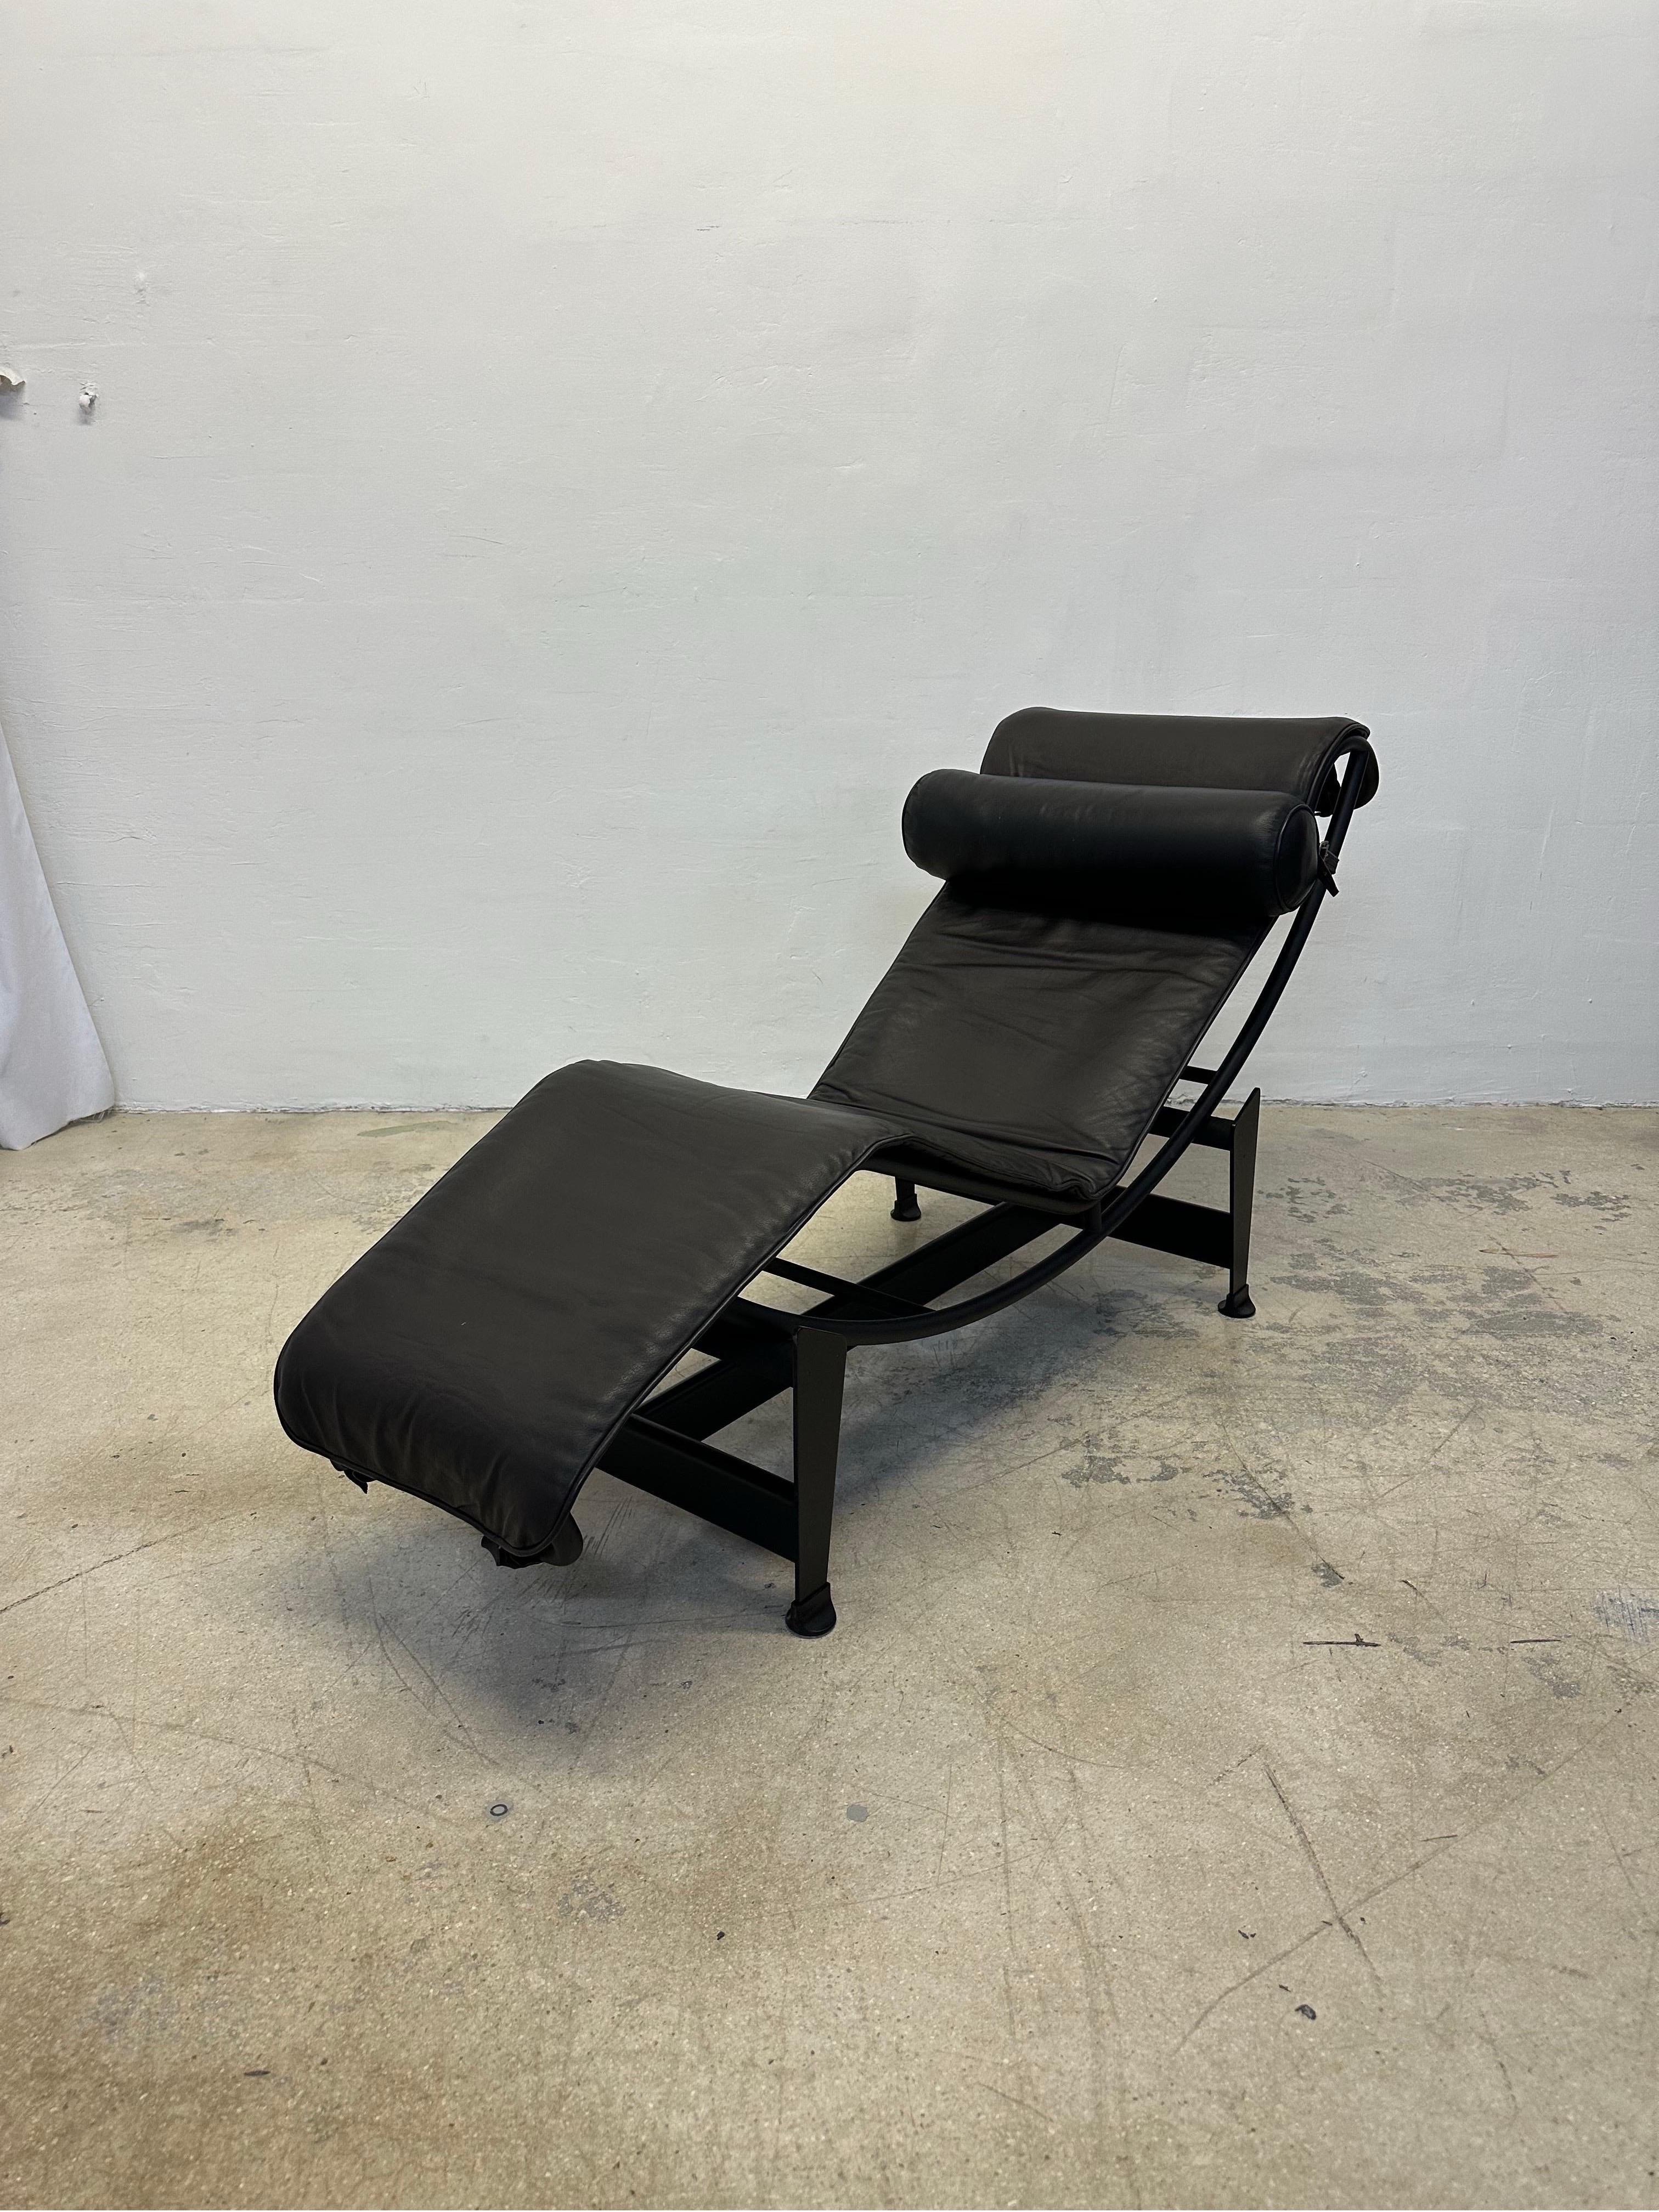 Chaise longue LC4 Noire en cuir brun foncé avec coussin en cuir noir sur une base en acier tubulaire noir et en acier noir par Le Corbusier, Pierre Jeanneret et Charlotte Perriand pour Cassina. Signé et inscrit sur la base et la chaise.

En 1922, Le